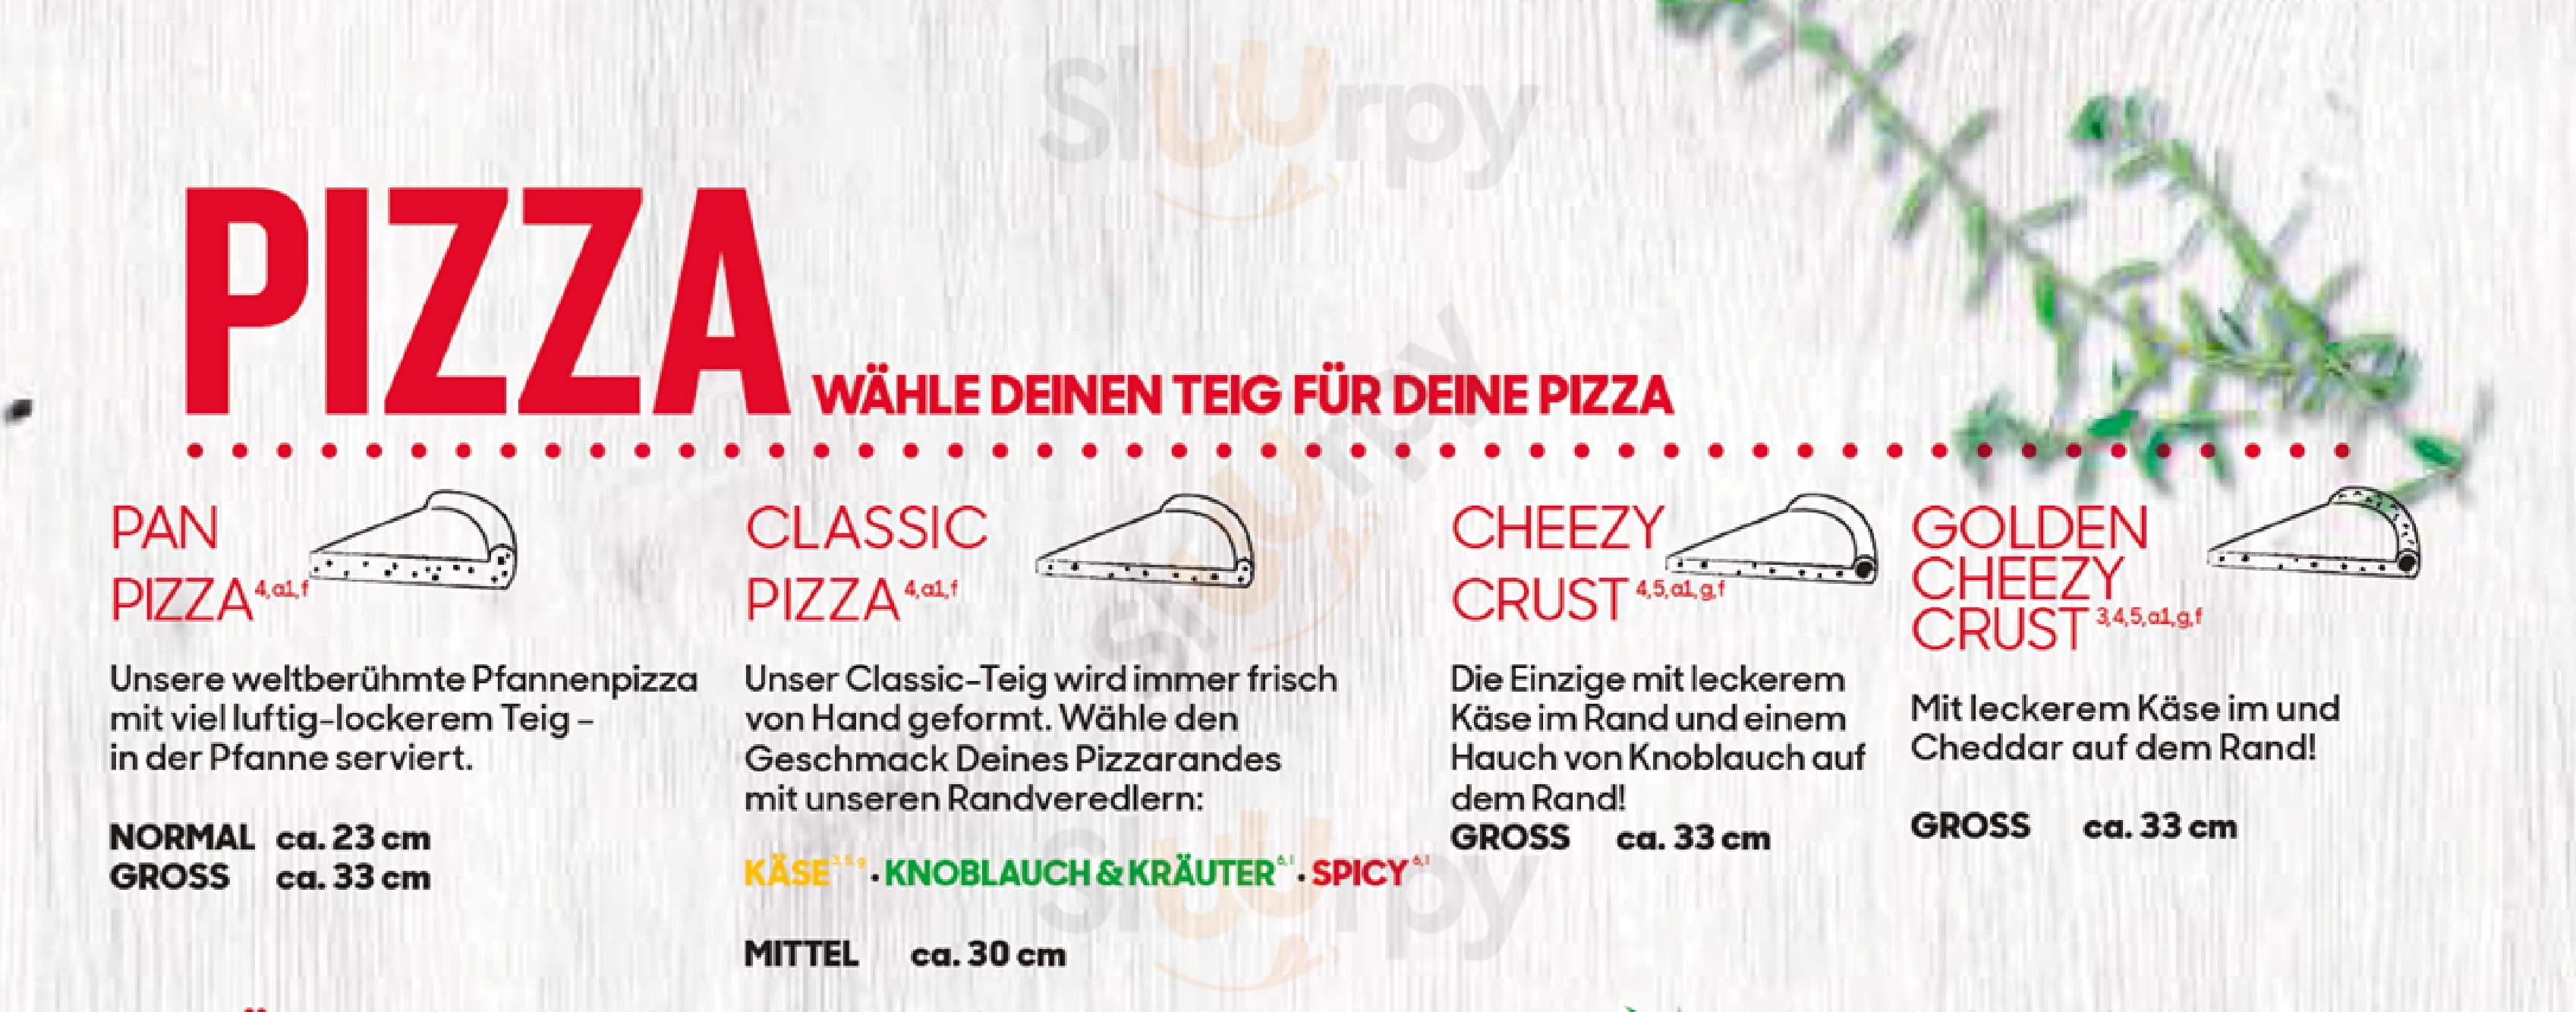 Pizza Hut Kassel, Cinestar Kassel Menu - 1